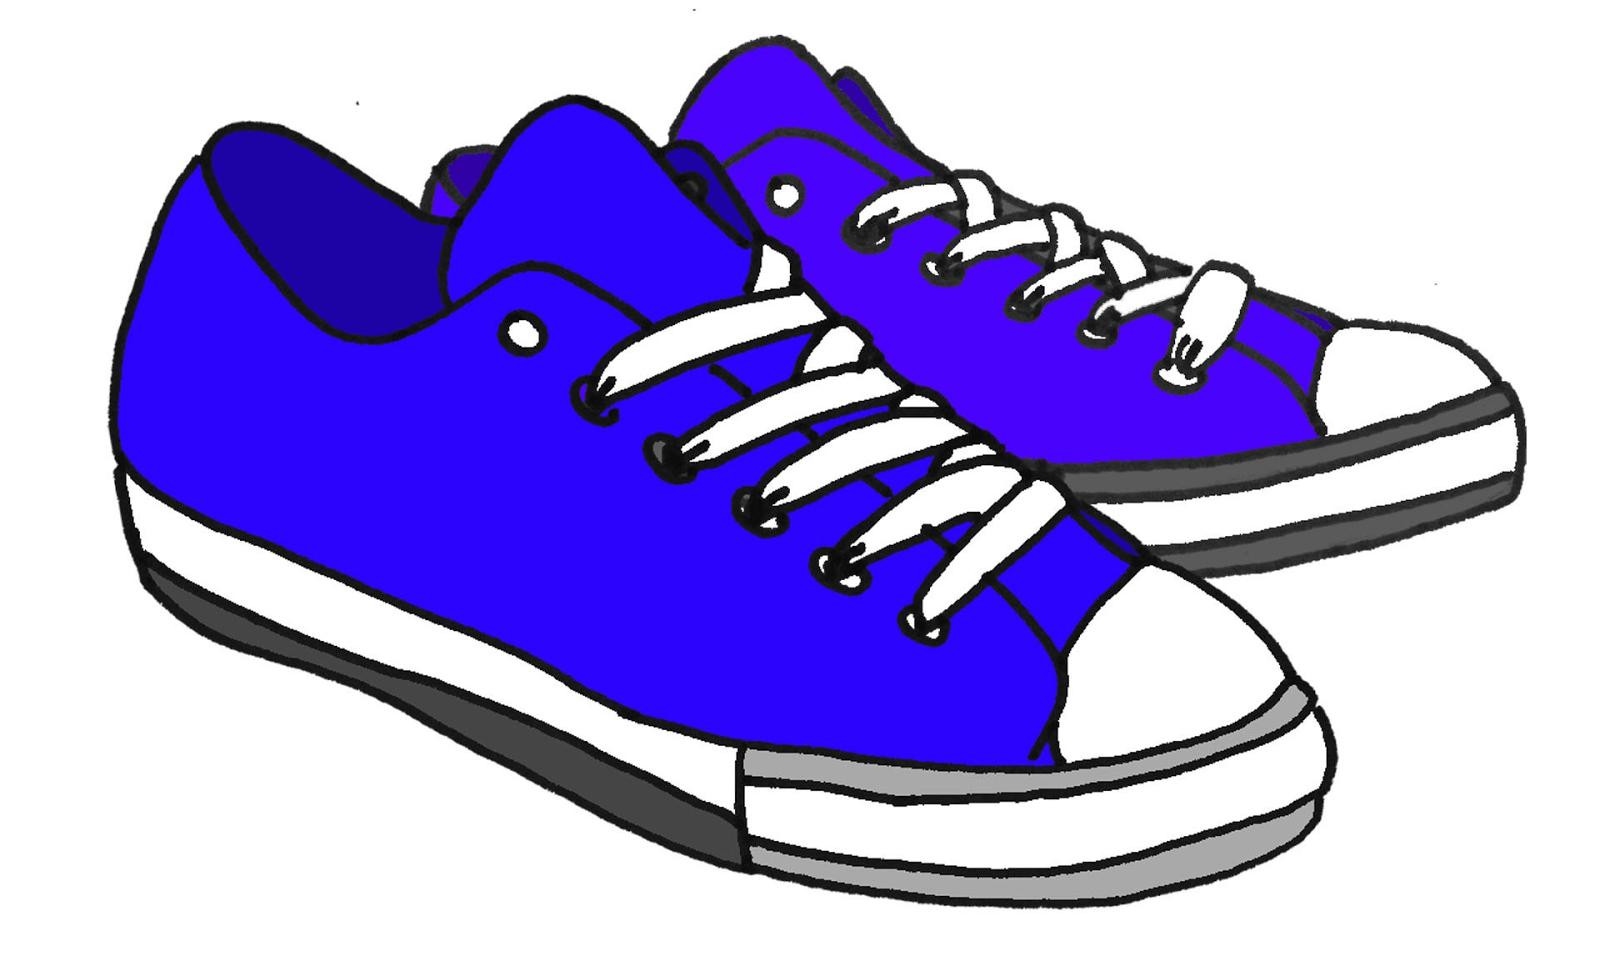 Shoe clipart 3 - Clipart Of Shoes